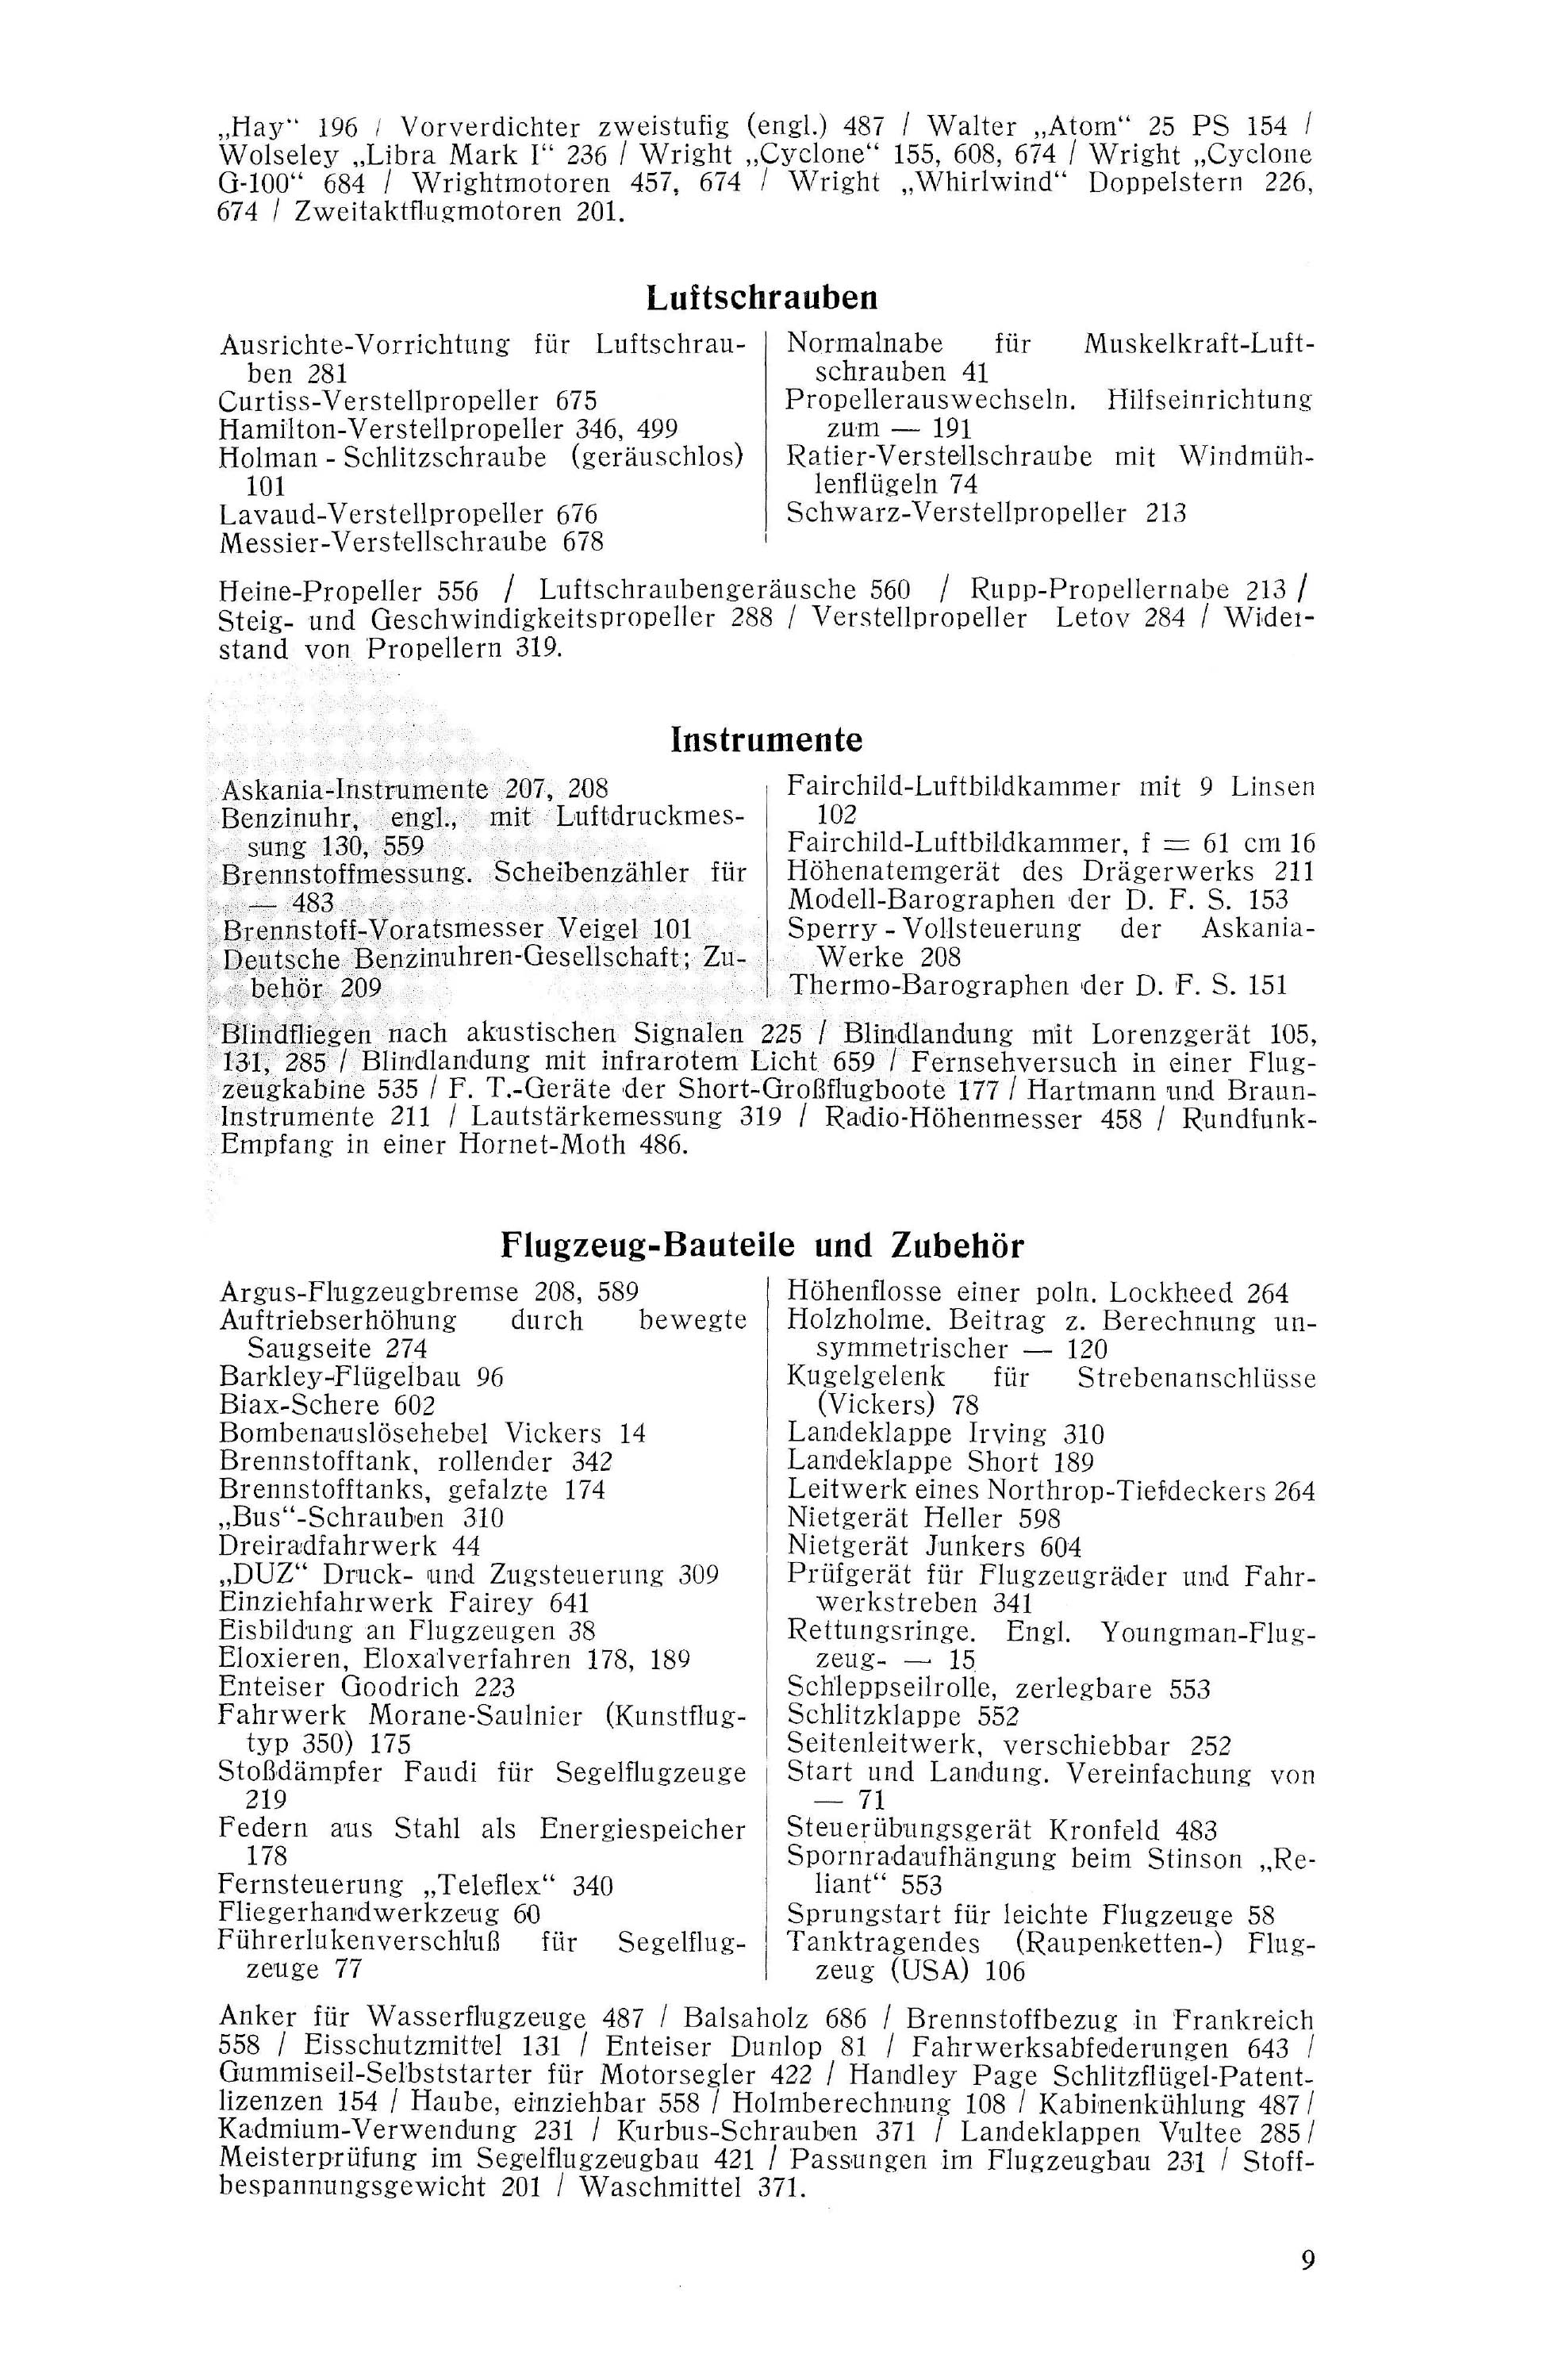 Sachregister und Inhaltsverzeichnis der Zeitschrift Flugsport 1936